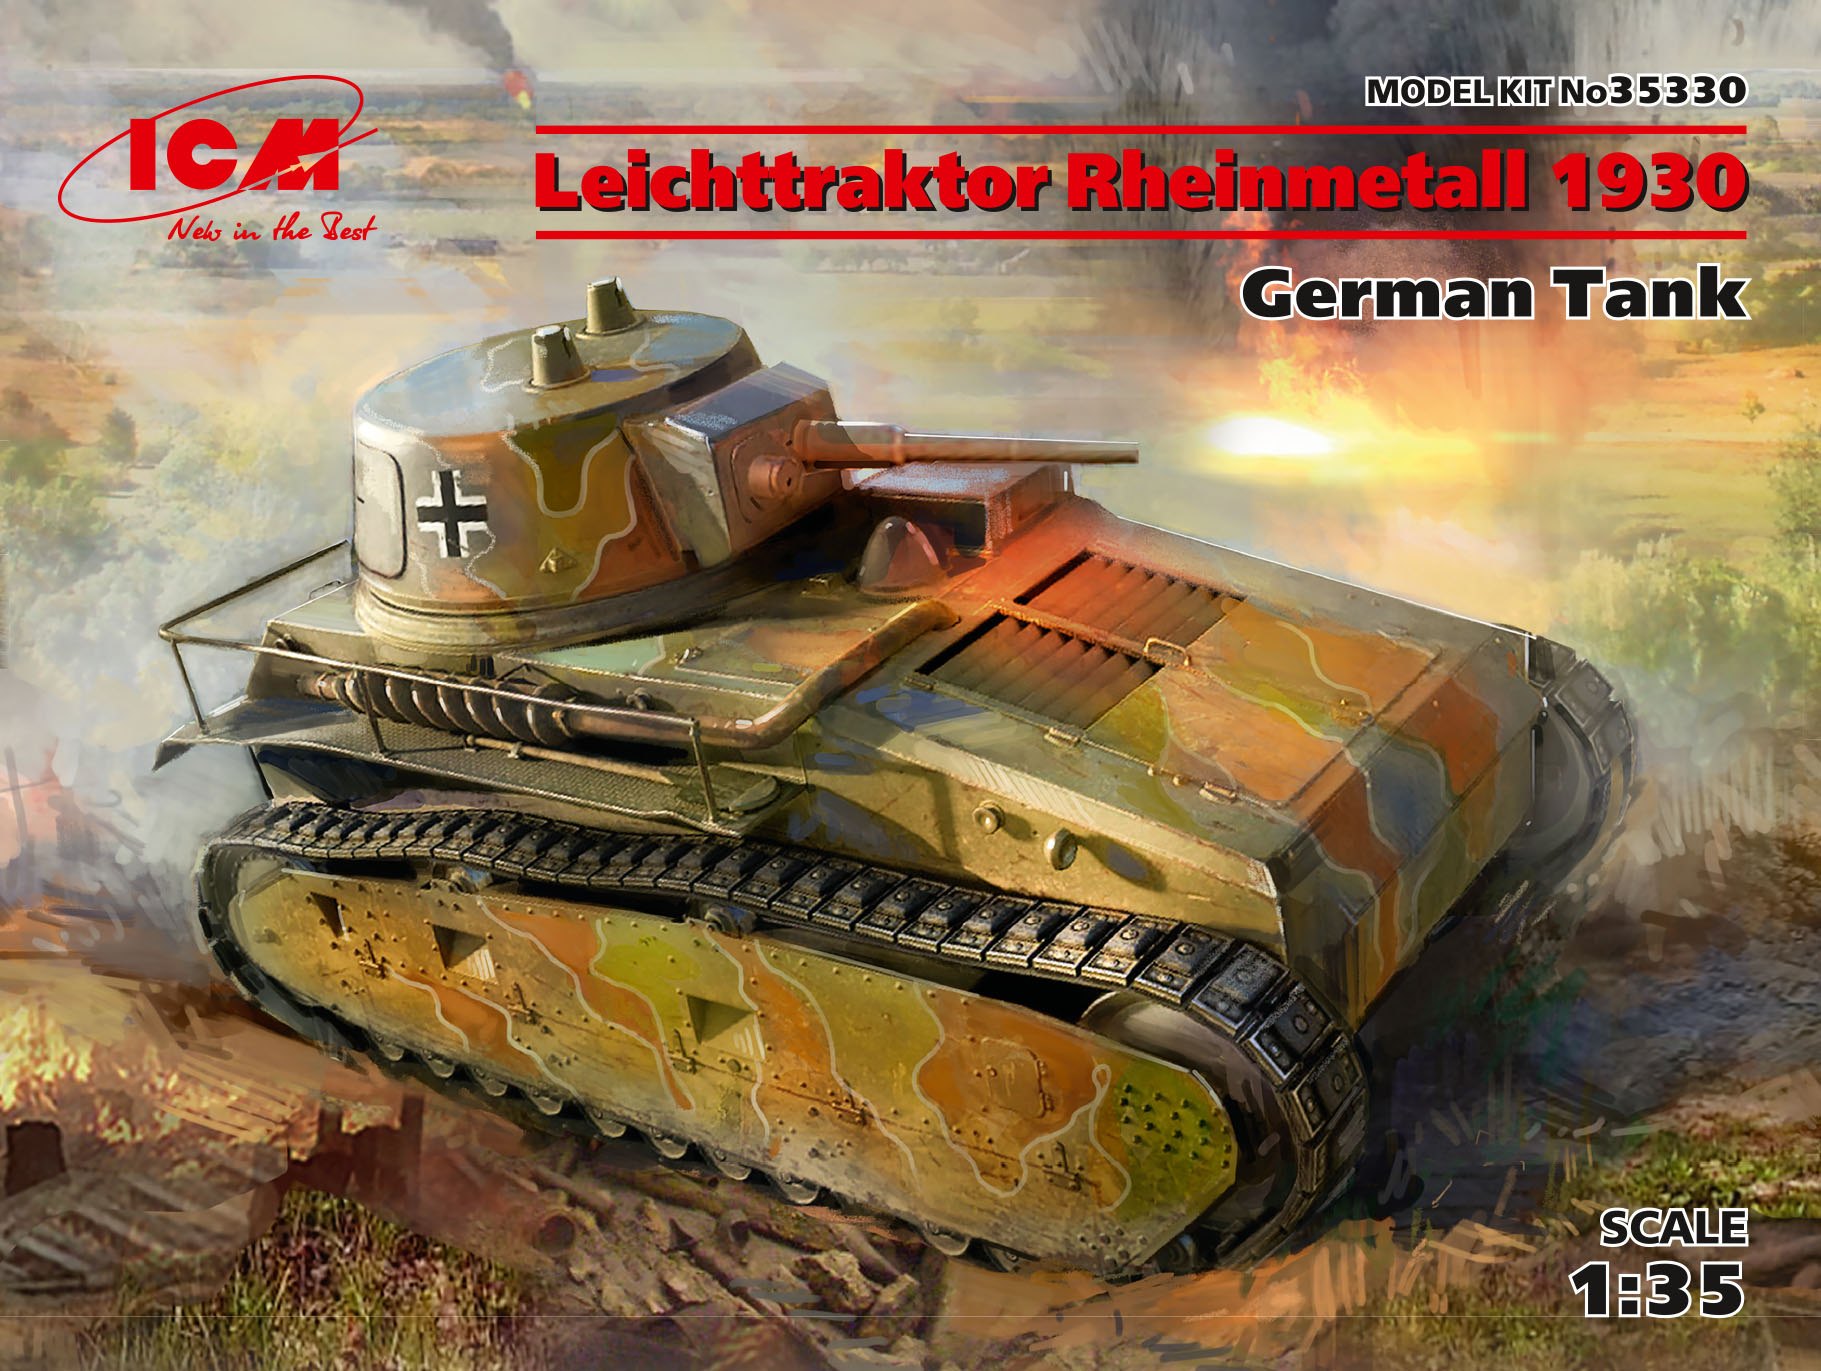 1/35　ドイツ軽戦車 ライヒトトラクトーア ラインメタル (VK31) 1930 - ウインドウを閉じる